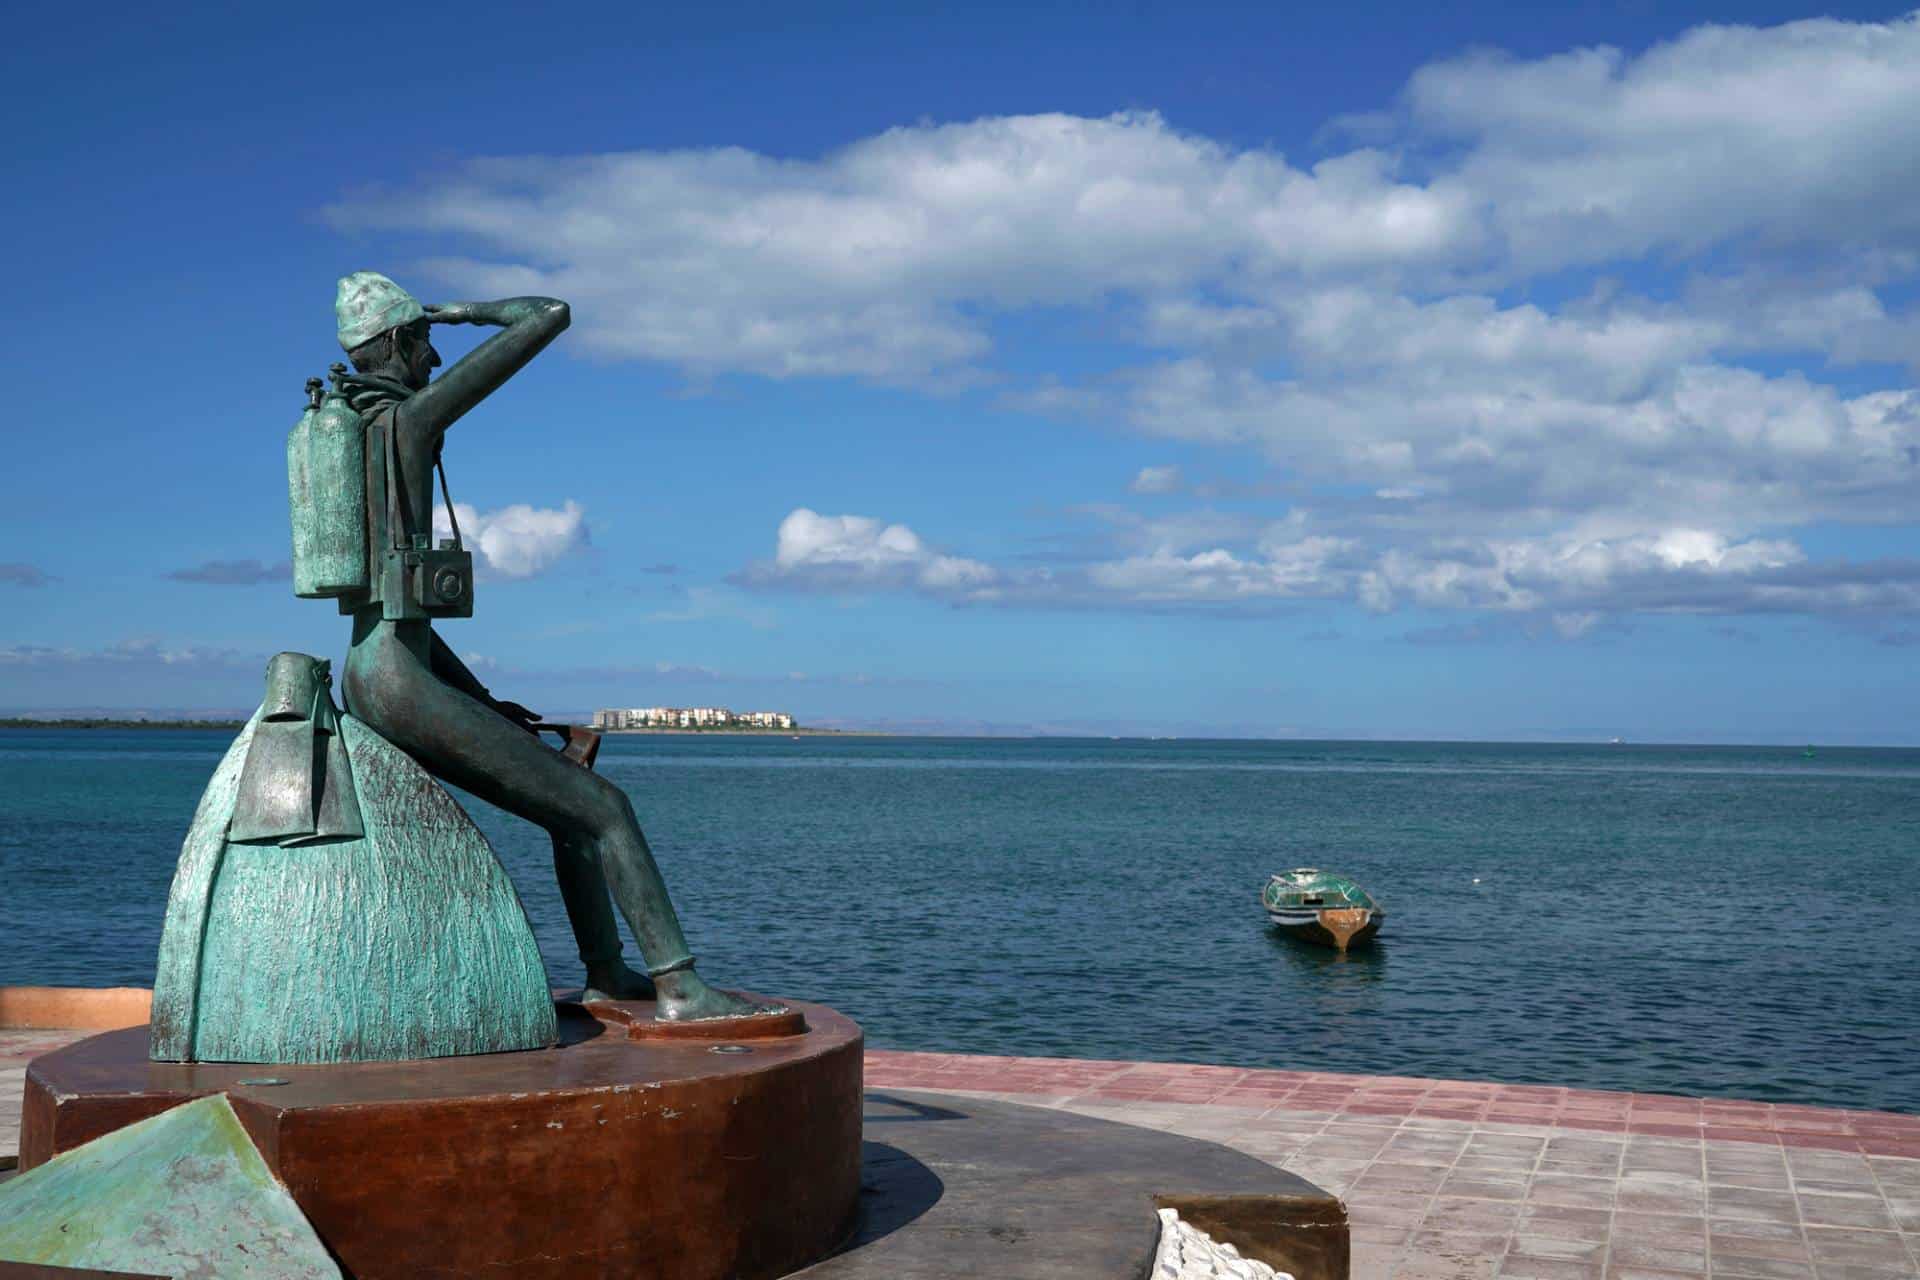 Jacques Cousteau statue in La Paz, Baja California Sur, Mexico.